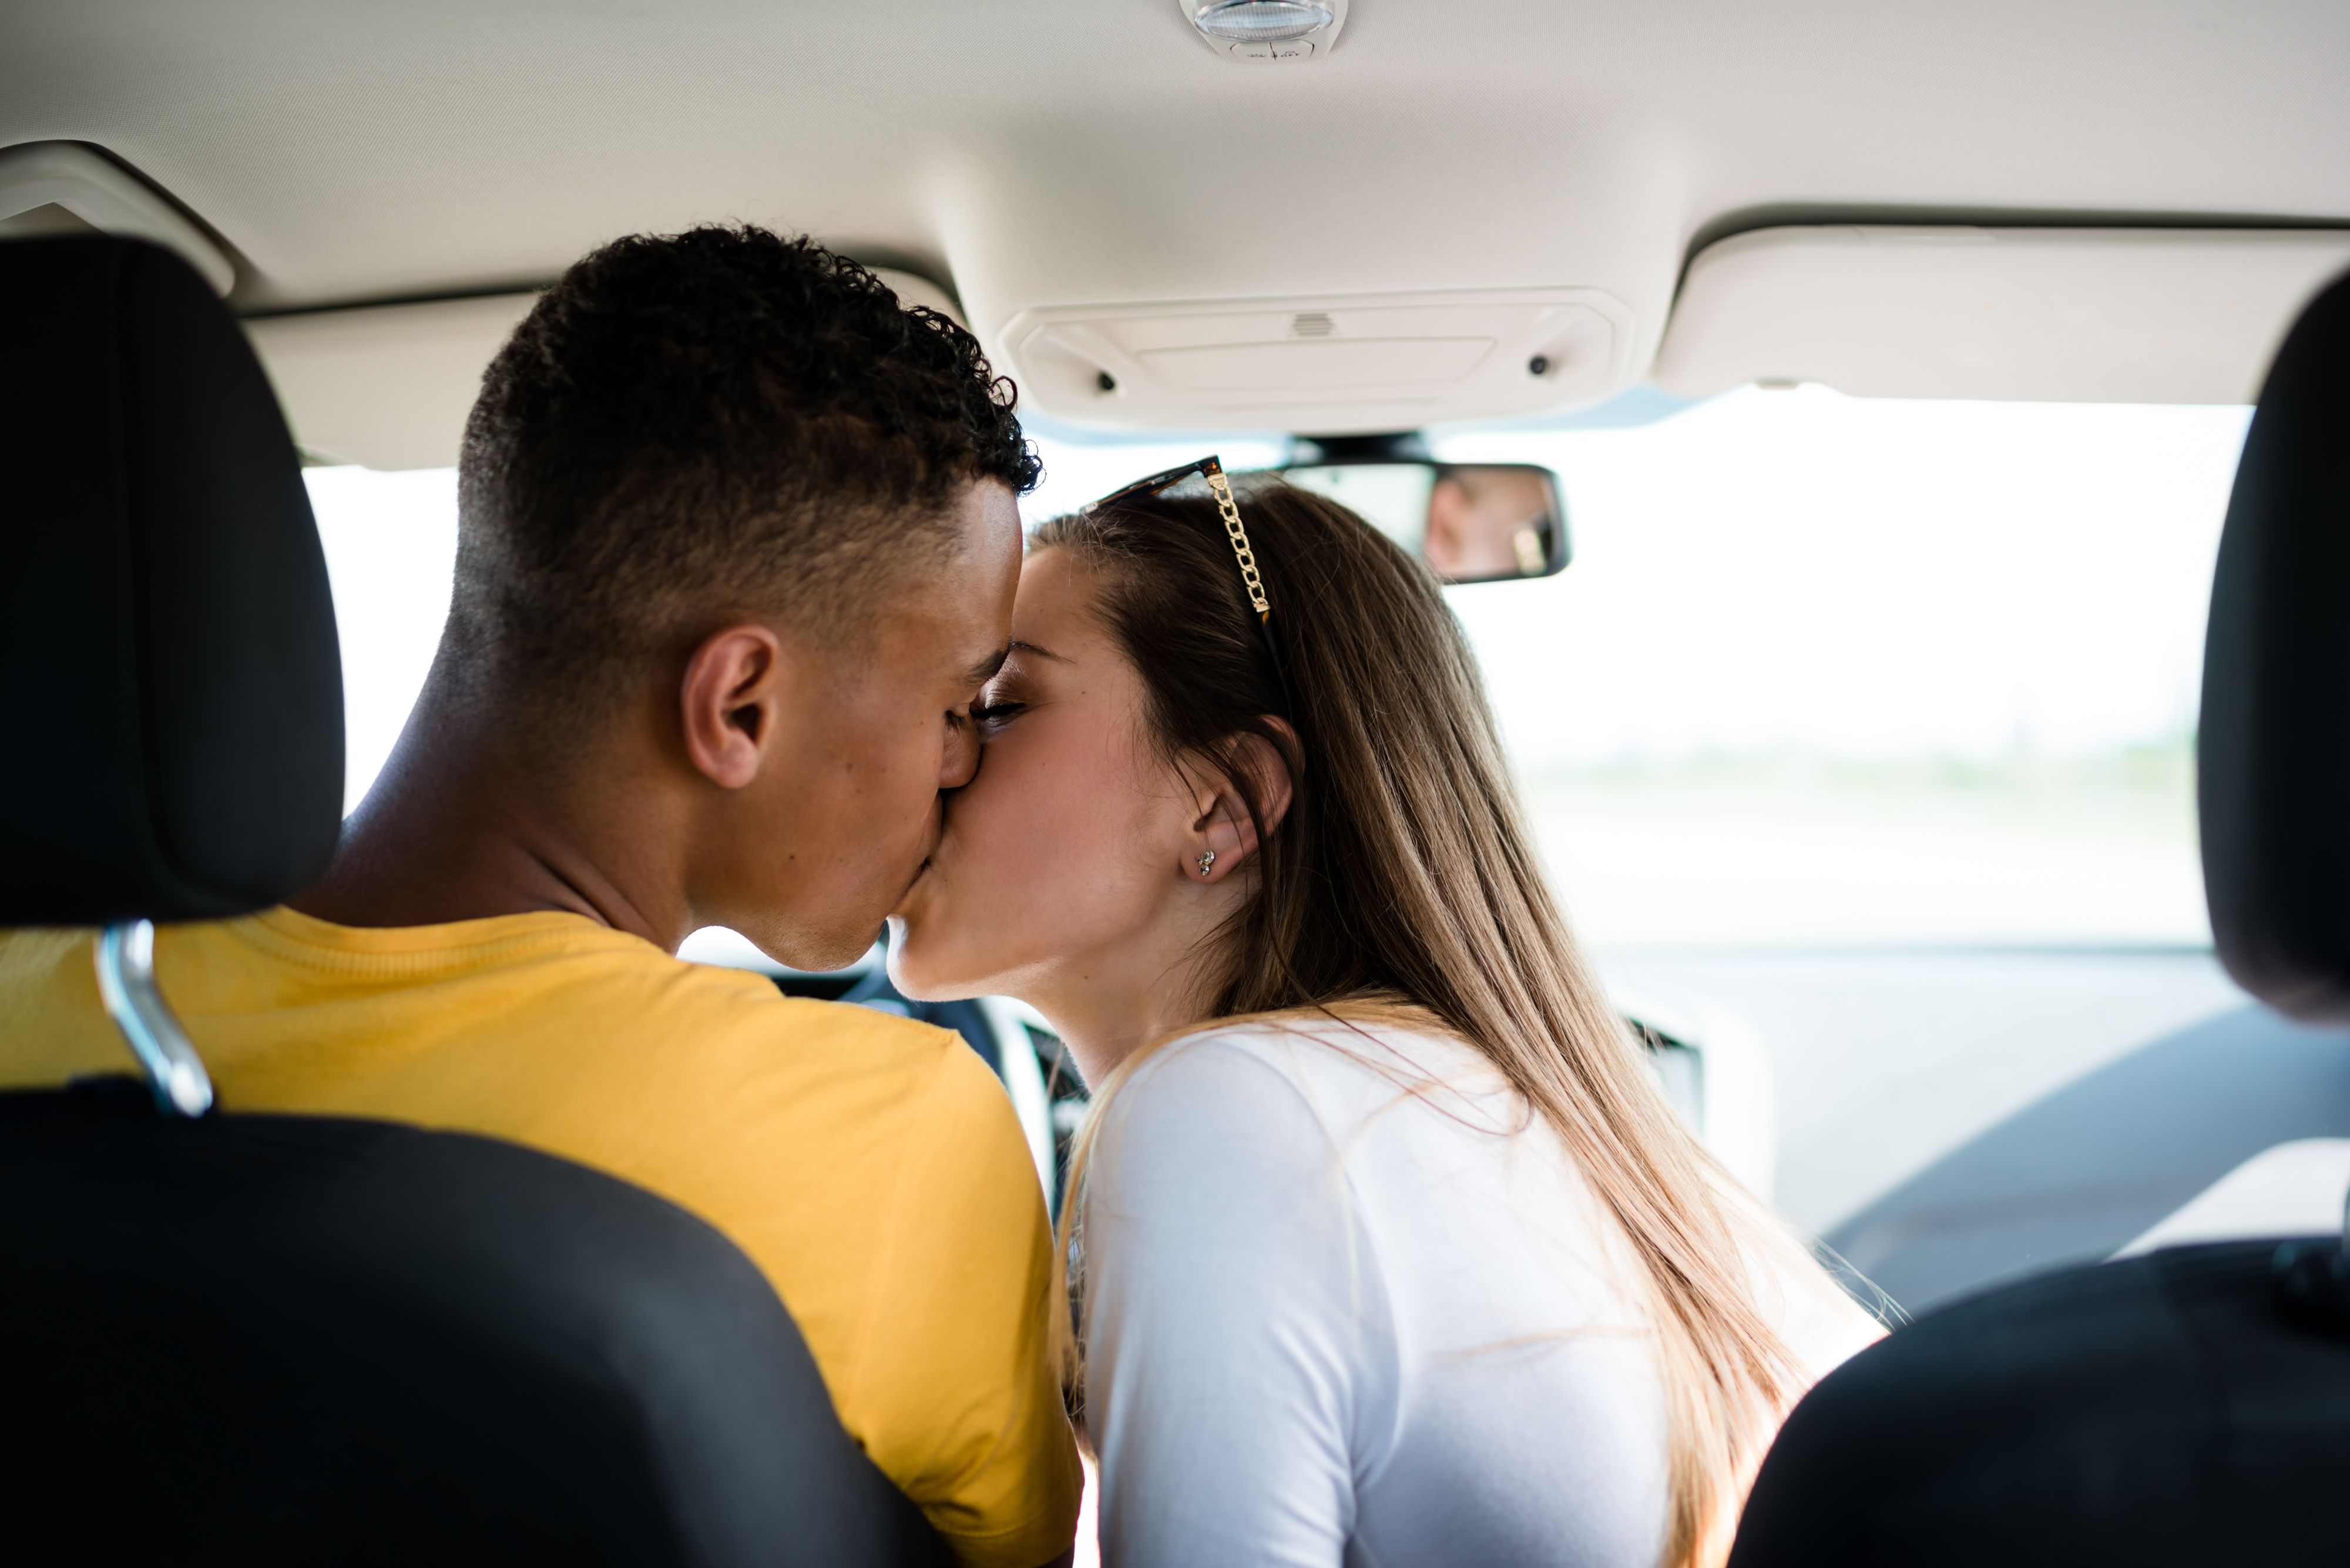 Sex In A Car Pics